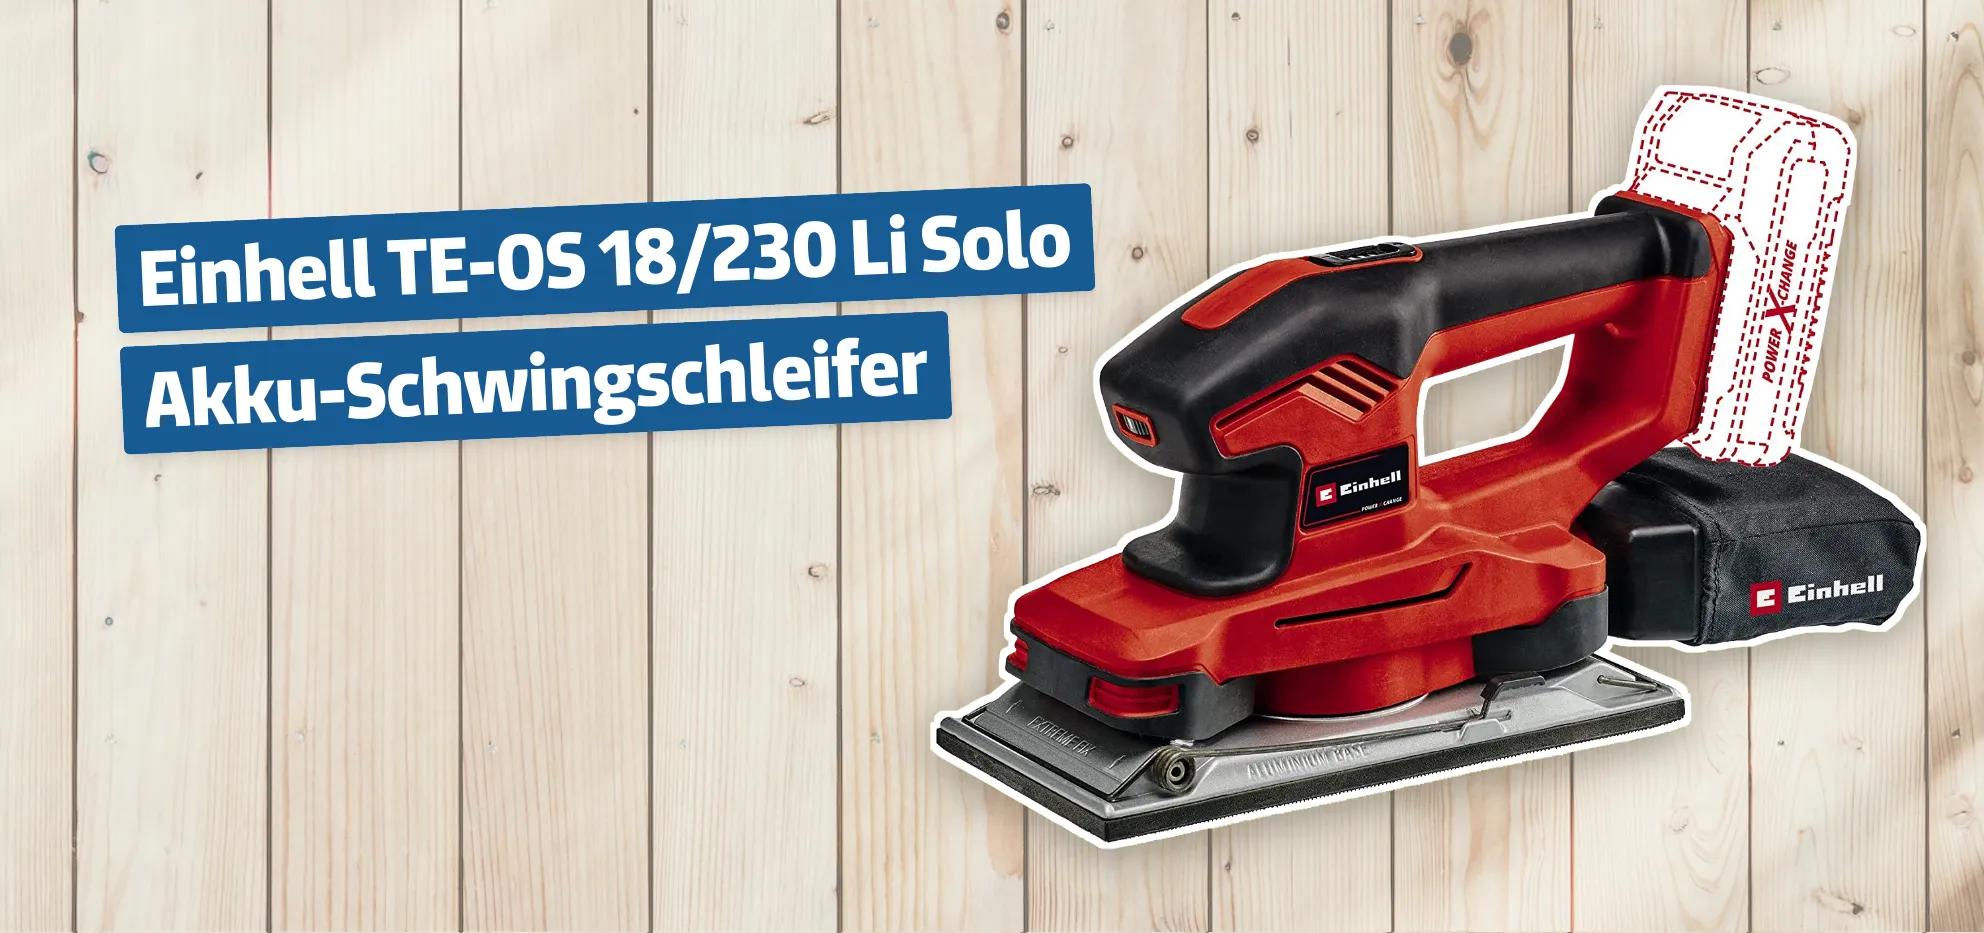 Einhell TE-OS 18/230 Li Solo Akku-Schwingschleifer